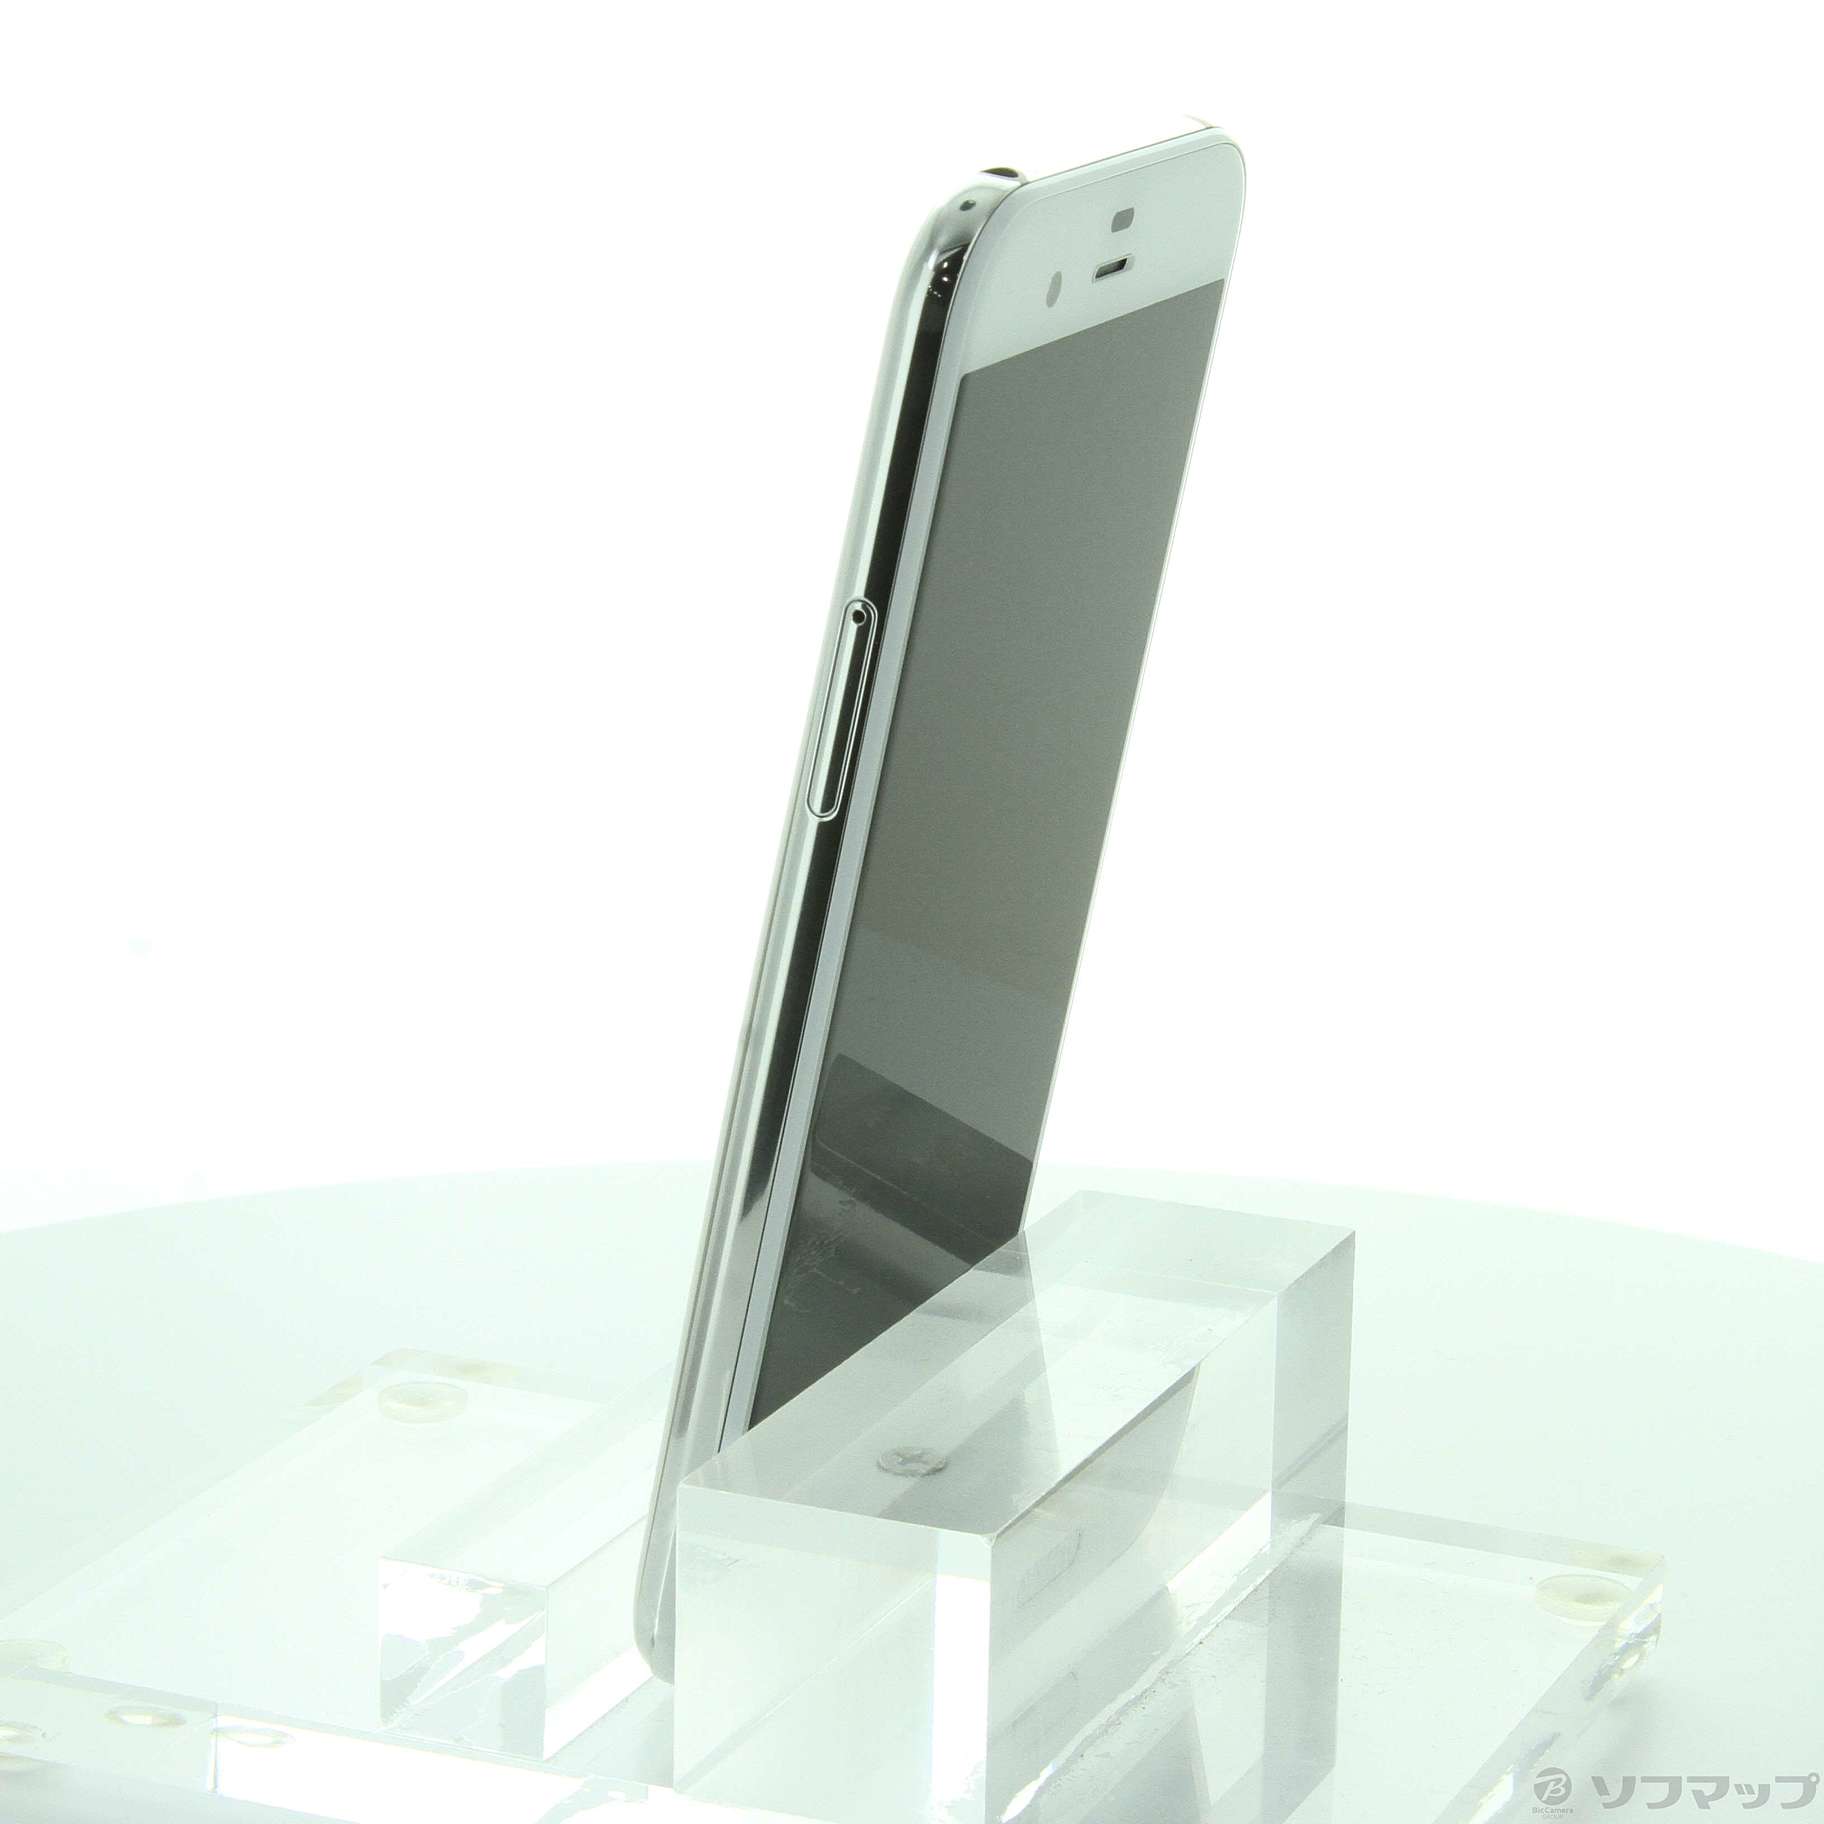 AQUOS R Zirconia White 64 GB SIMフリースマートフォン/携帯電話